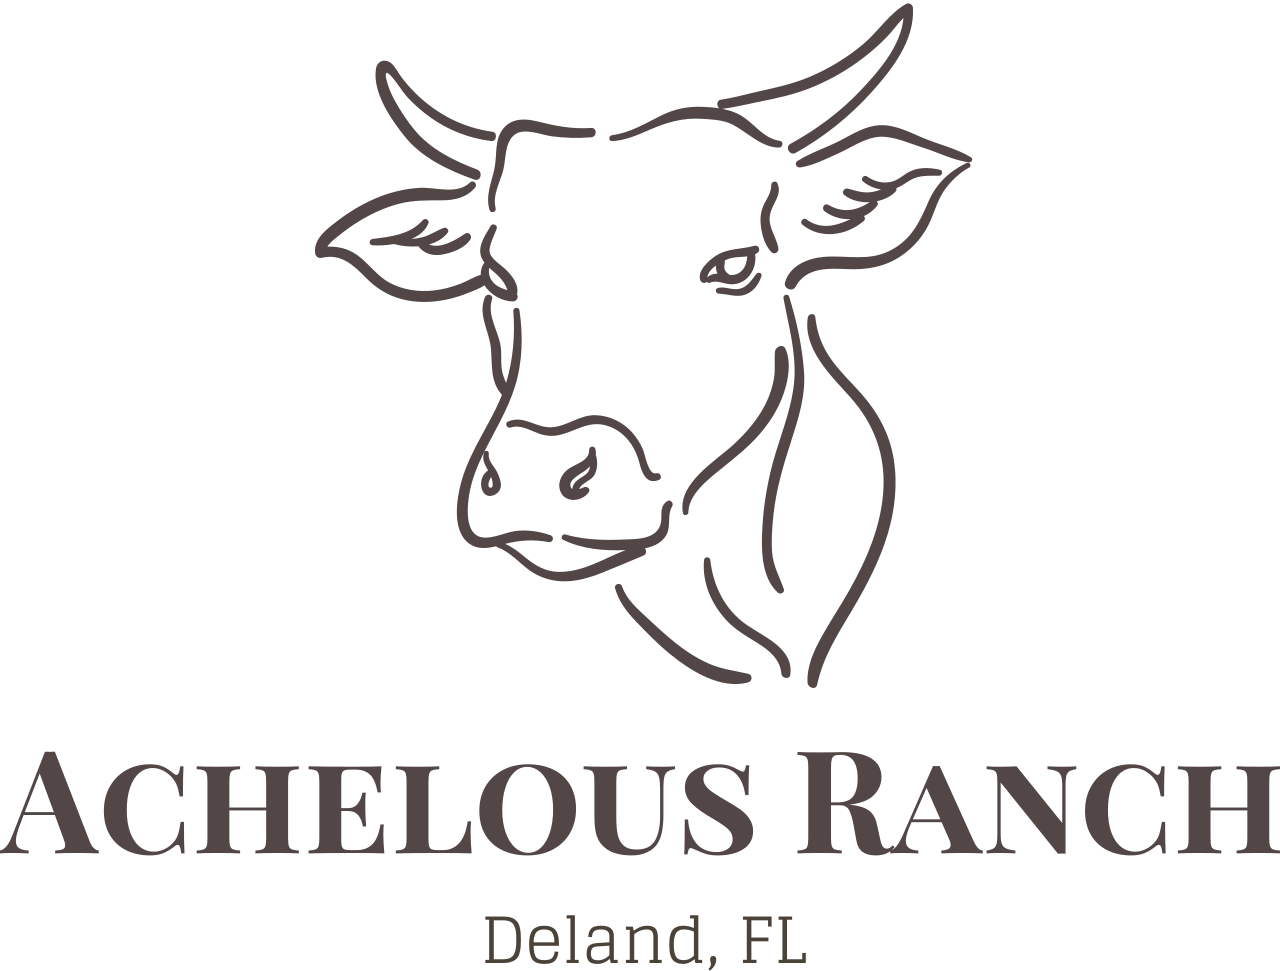 Achelous Ranch's logo